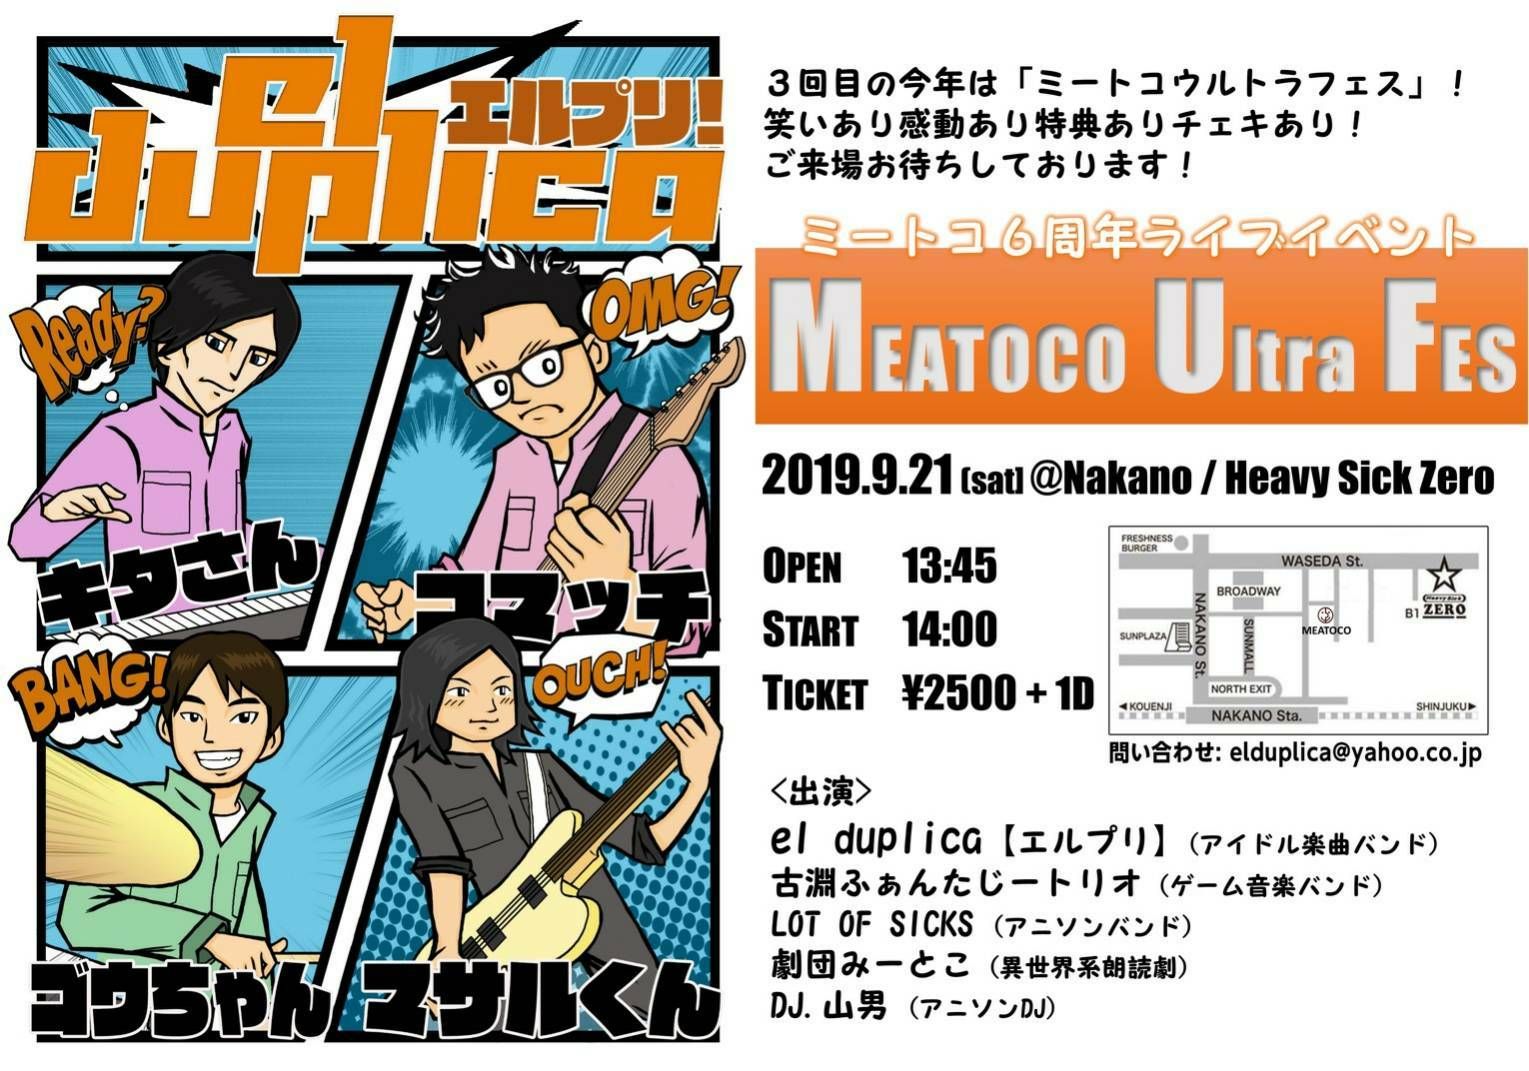 ミートコ６周年ライブイベント 『Meatoco Ultra Fes』